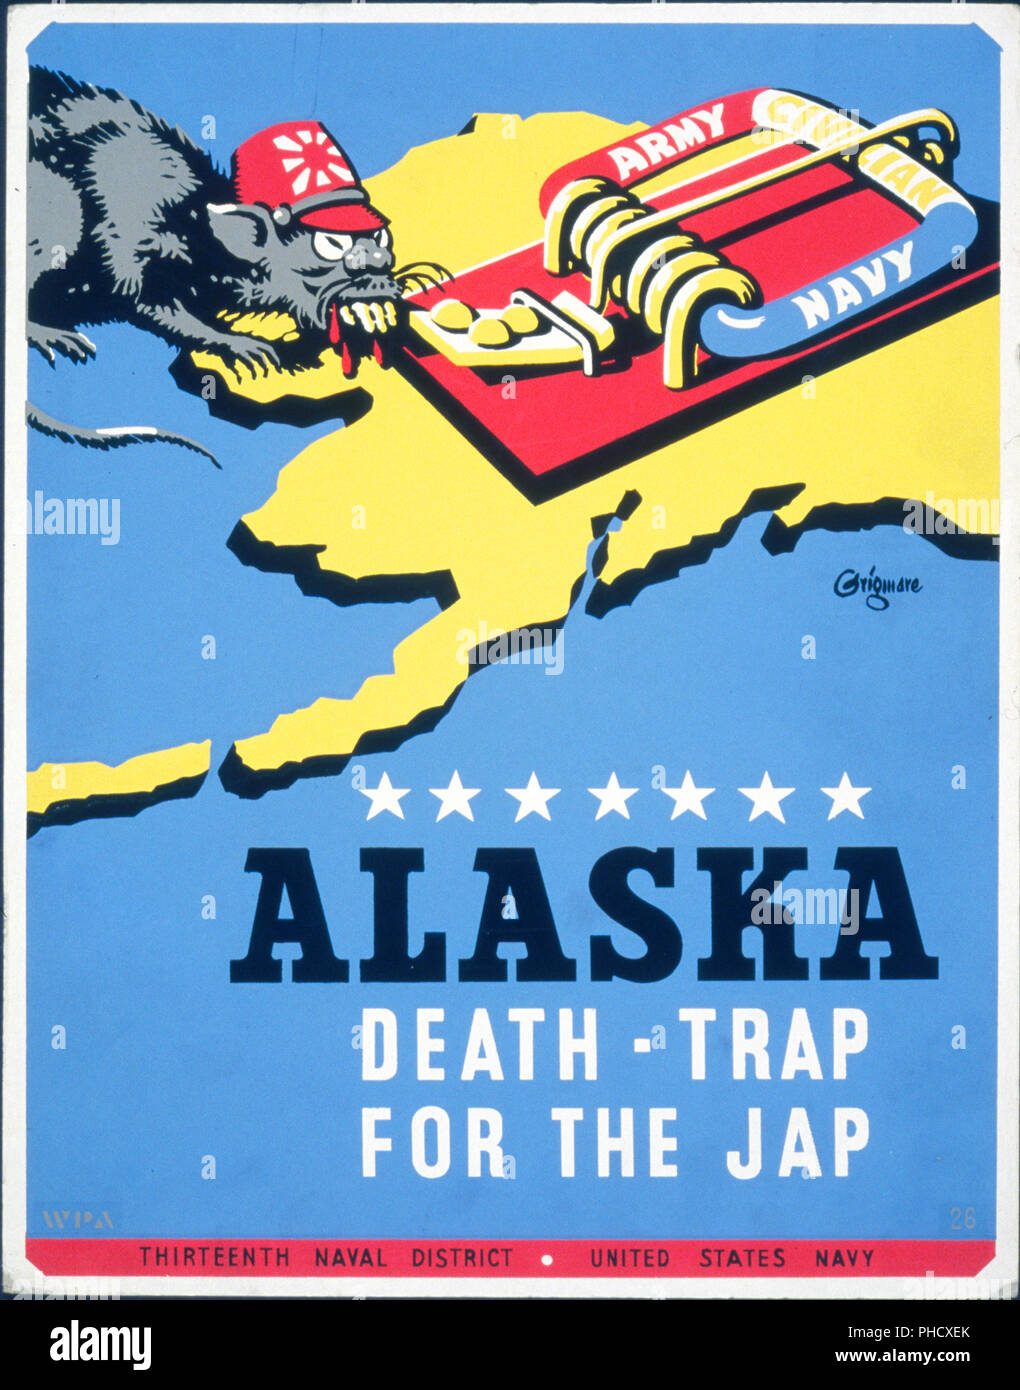 Plakat für 13 Naval Bezirk, United States Navy, eine Ratte, die Japan, nähert sich eine Mausefalle mit der Bezeichnung 'Army Navy Zivile", auf einem Hintergrund Karte von Alaska. Stockfoto